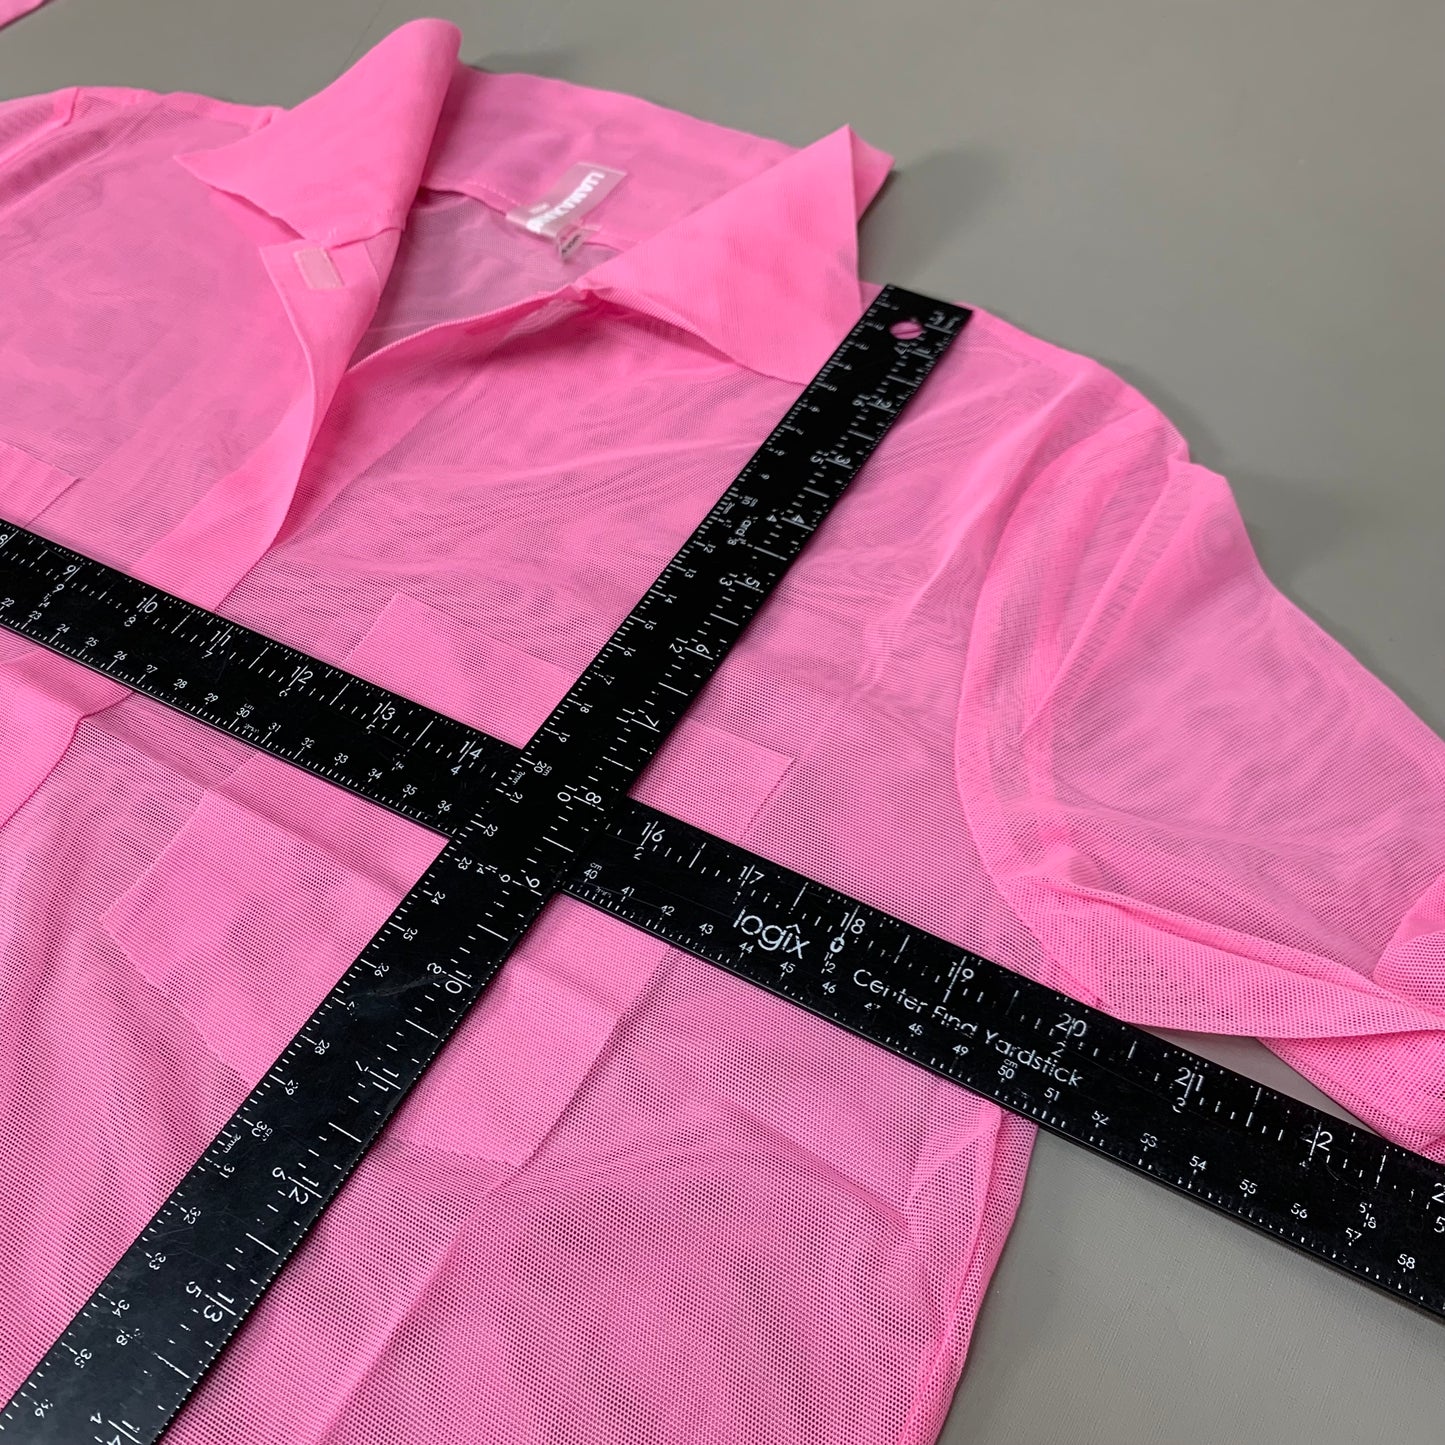 NORMA KAMALI Nk Shirt w/ Faux Pockets Sz XS/34 Candy Pink ST1236MS963966